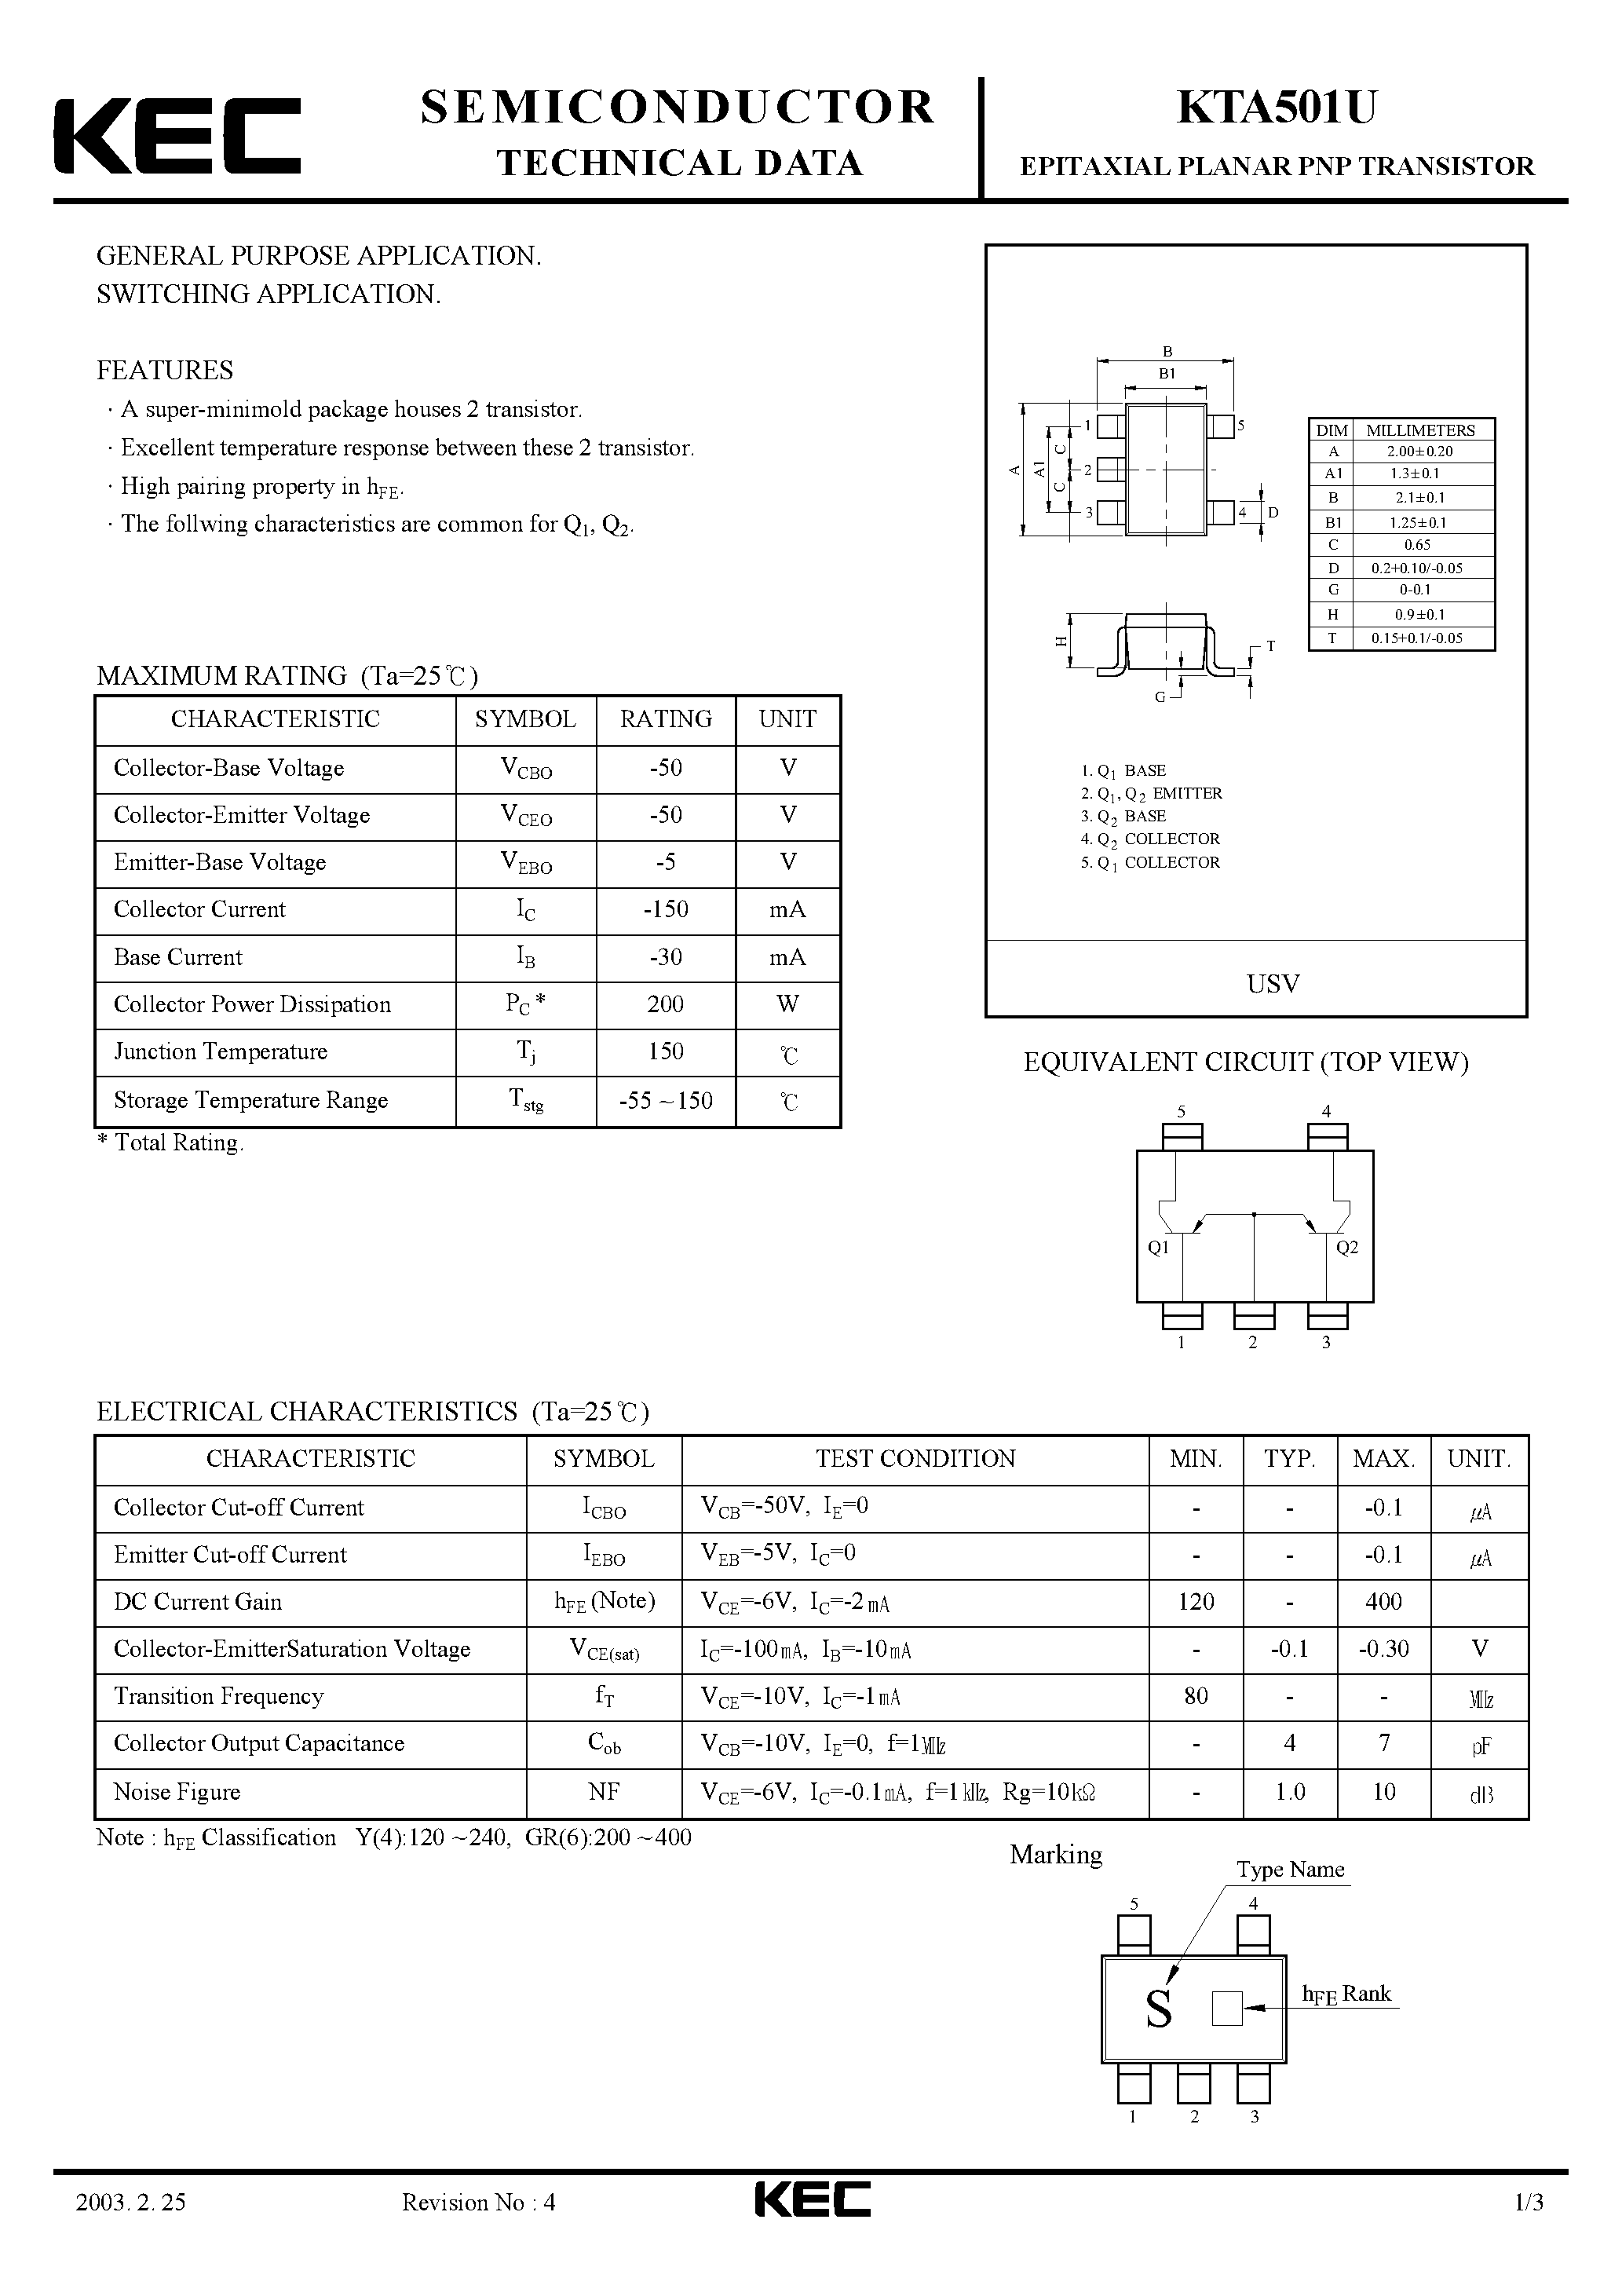 Datasheet KTA501U - EPITAXIAL PLANAR PNP TRANSISTOR (GENERAL PURPOSE/ SWITCHING) page 1